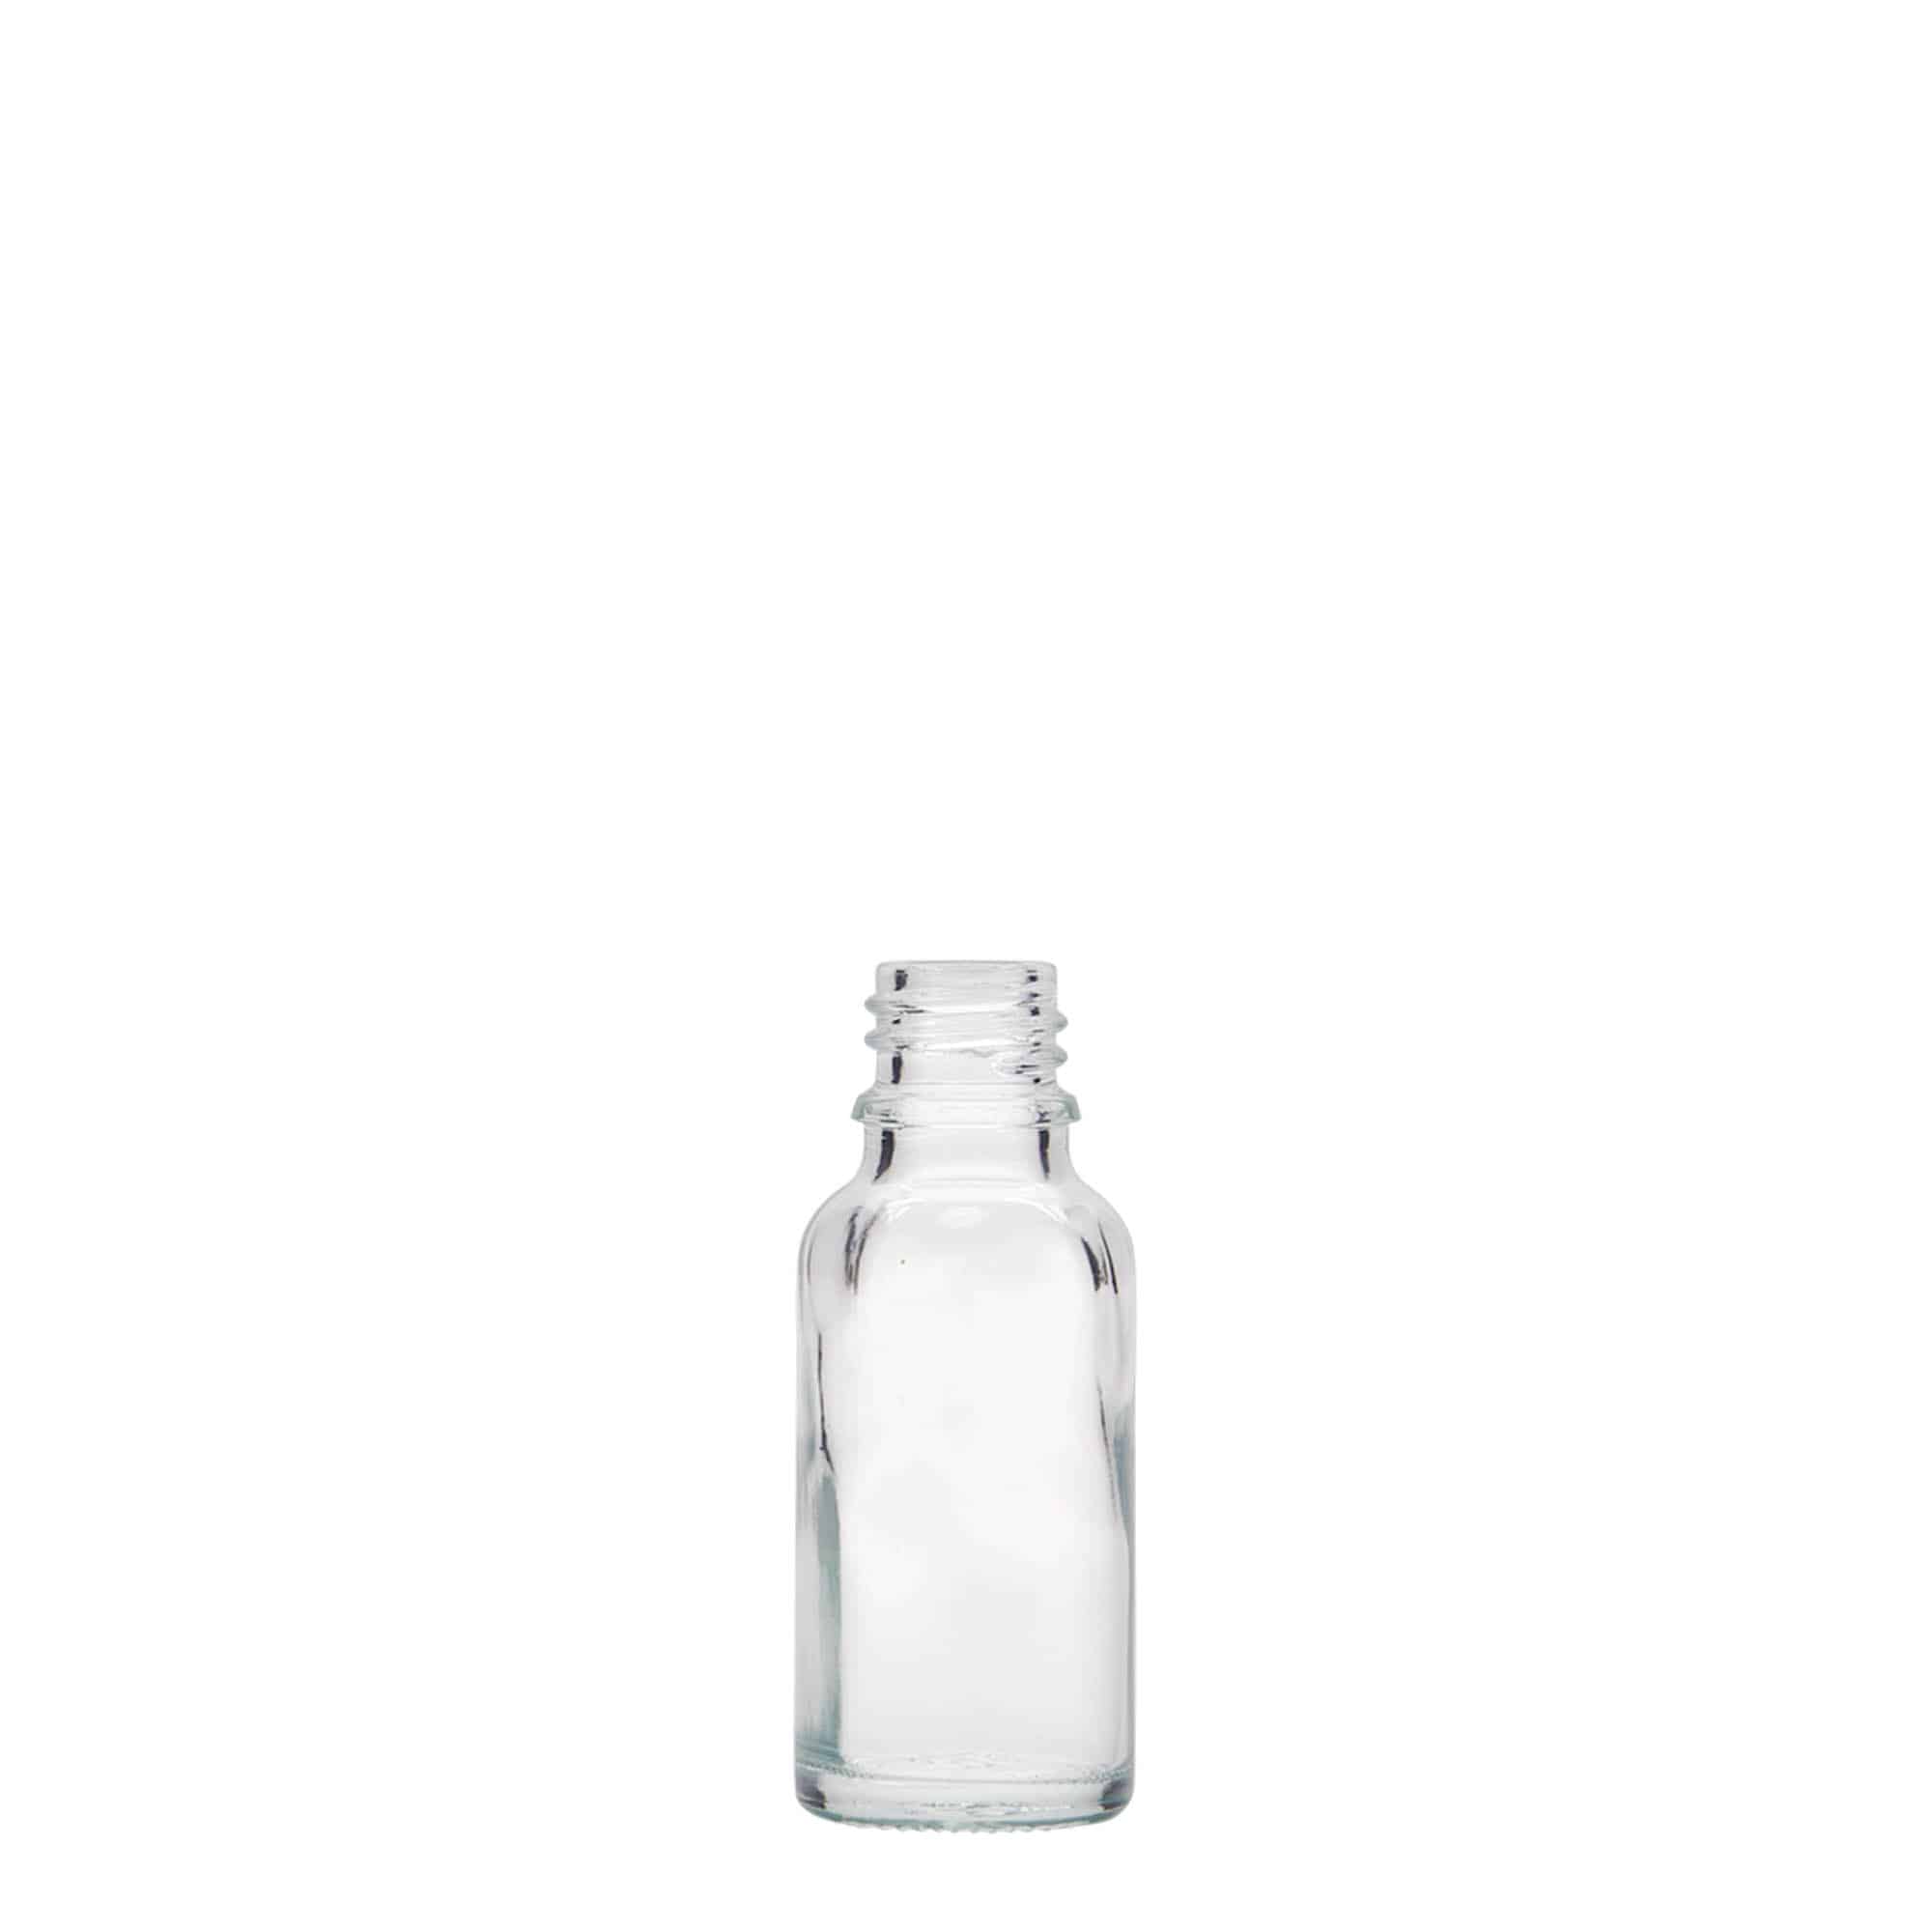 20 ml medicinflaske, glas, åbning: DIN 18